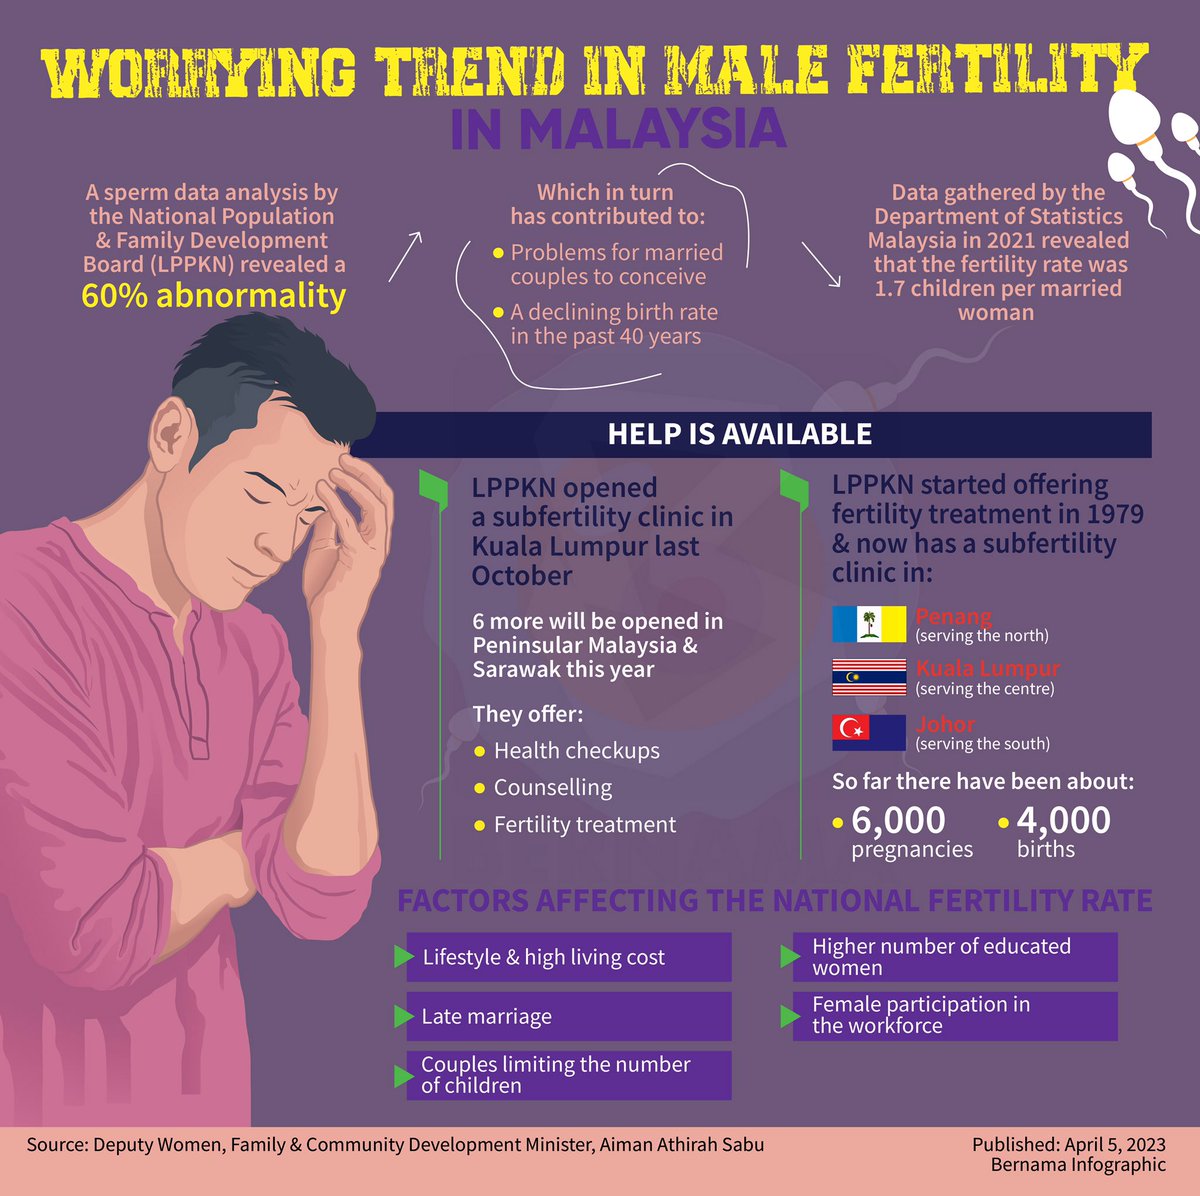 MASALAH KESUBURAN KAUM LELAKI DI MALAYSIA PADA TAHAP MEMBIMBANGKAN

#fertility
#malefertility
#malefertilityawarness
#KLCeria
#CMSWPKL
@KPWKM